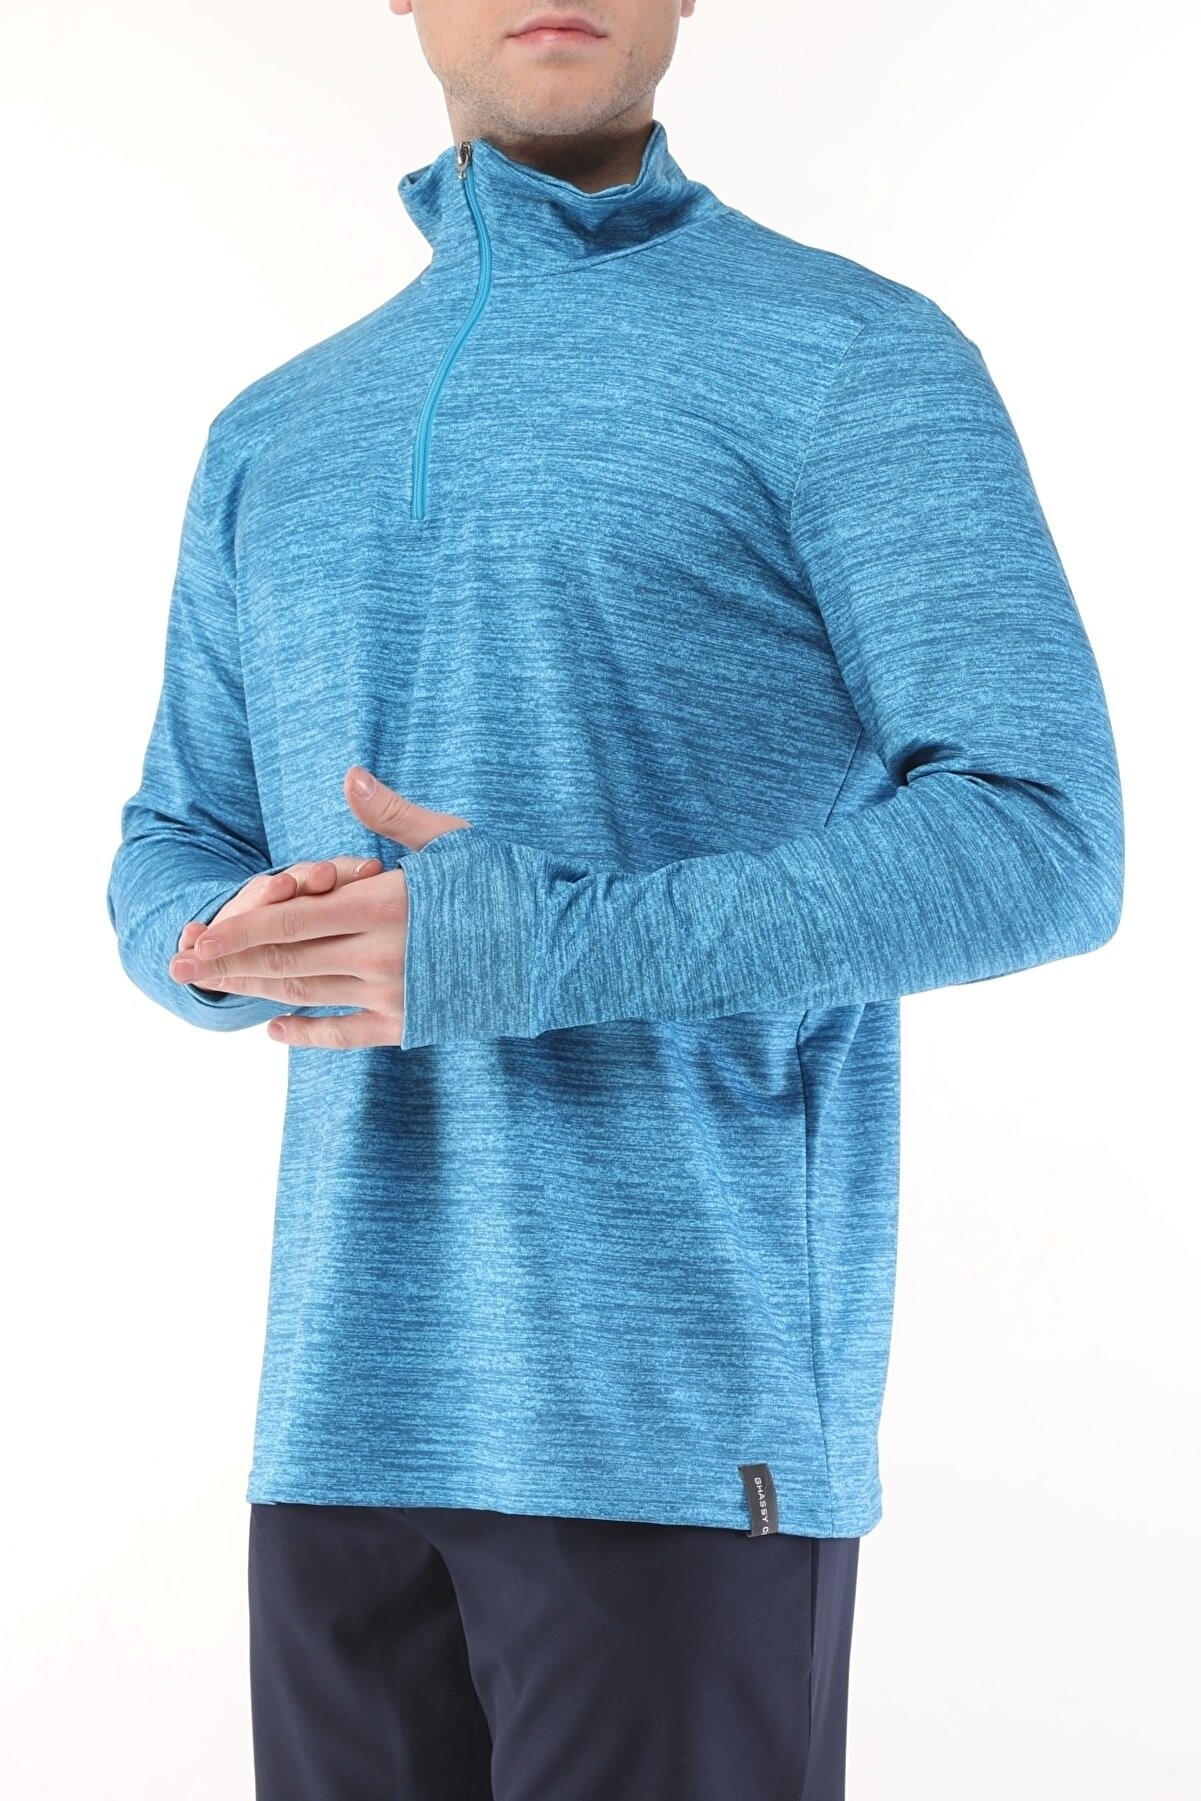 Ghassy Co. Erkek Running Nem Emici UV Güneşten Koruma Parmaklık Detaylı Uzun Kollu Outdoor Tshirt - TURKUAZ